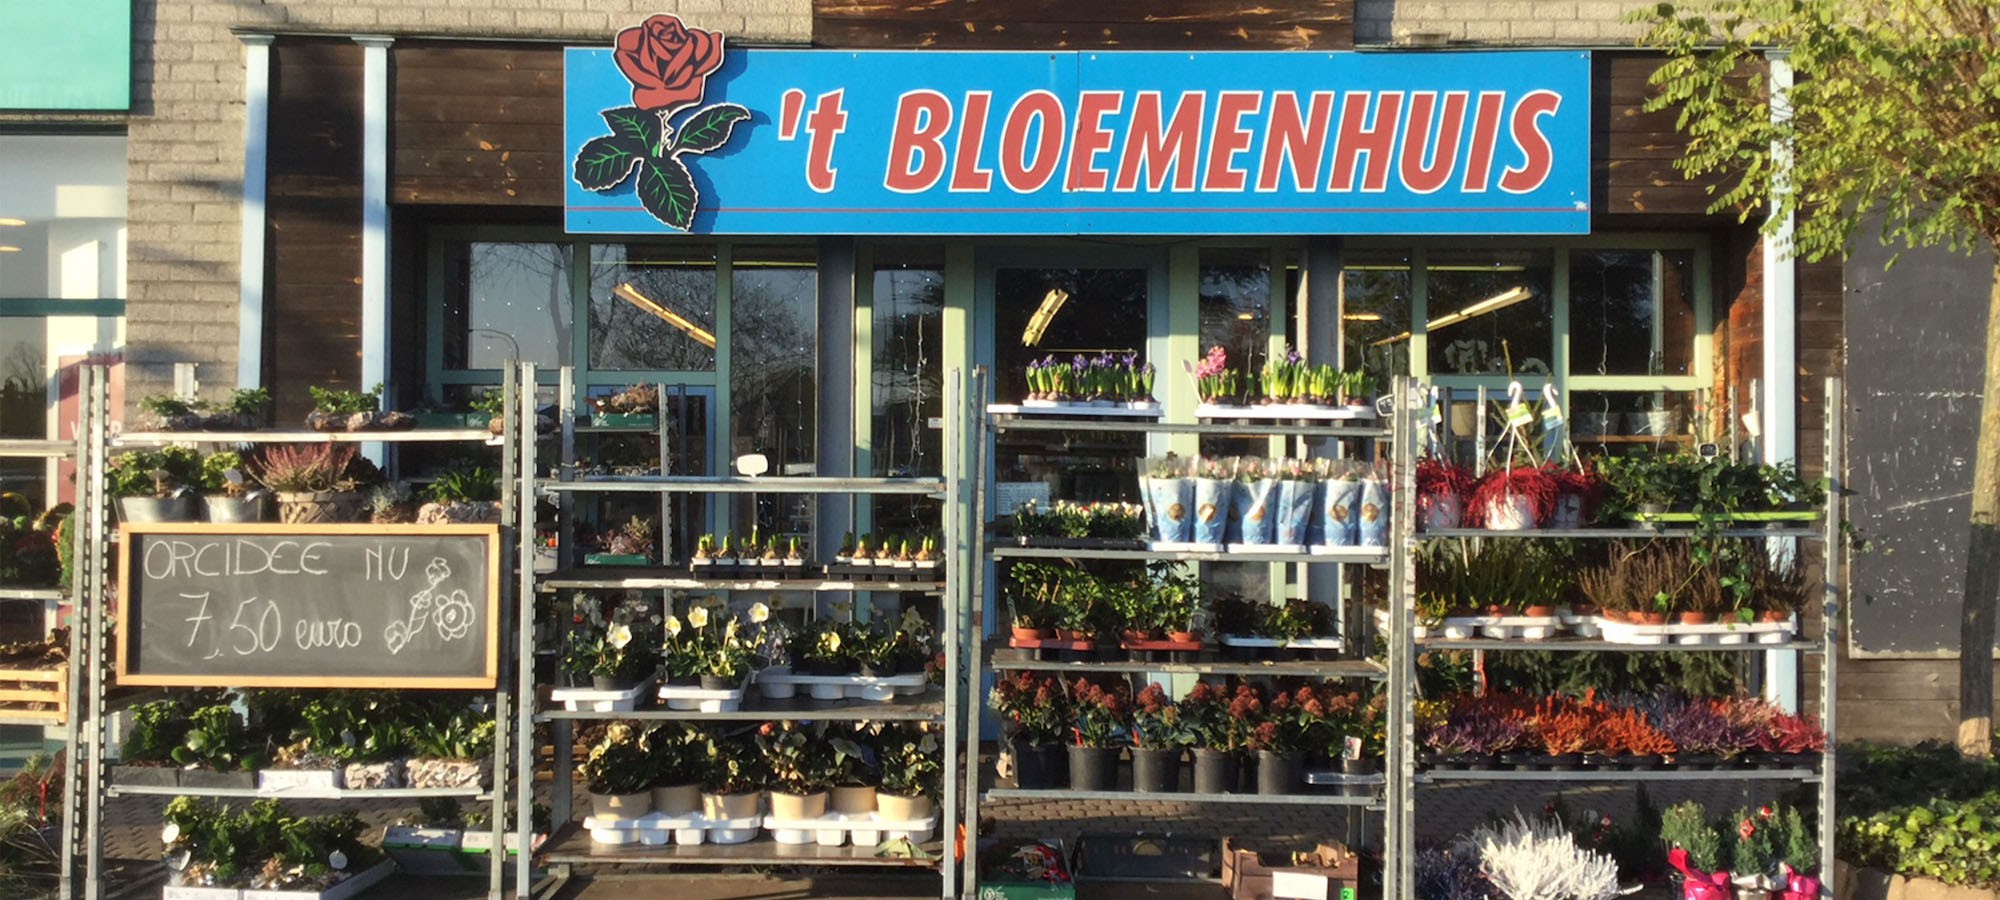 Header 't Bloemenhuis - Bloemen & planten Houthalen-Helchteren